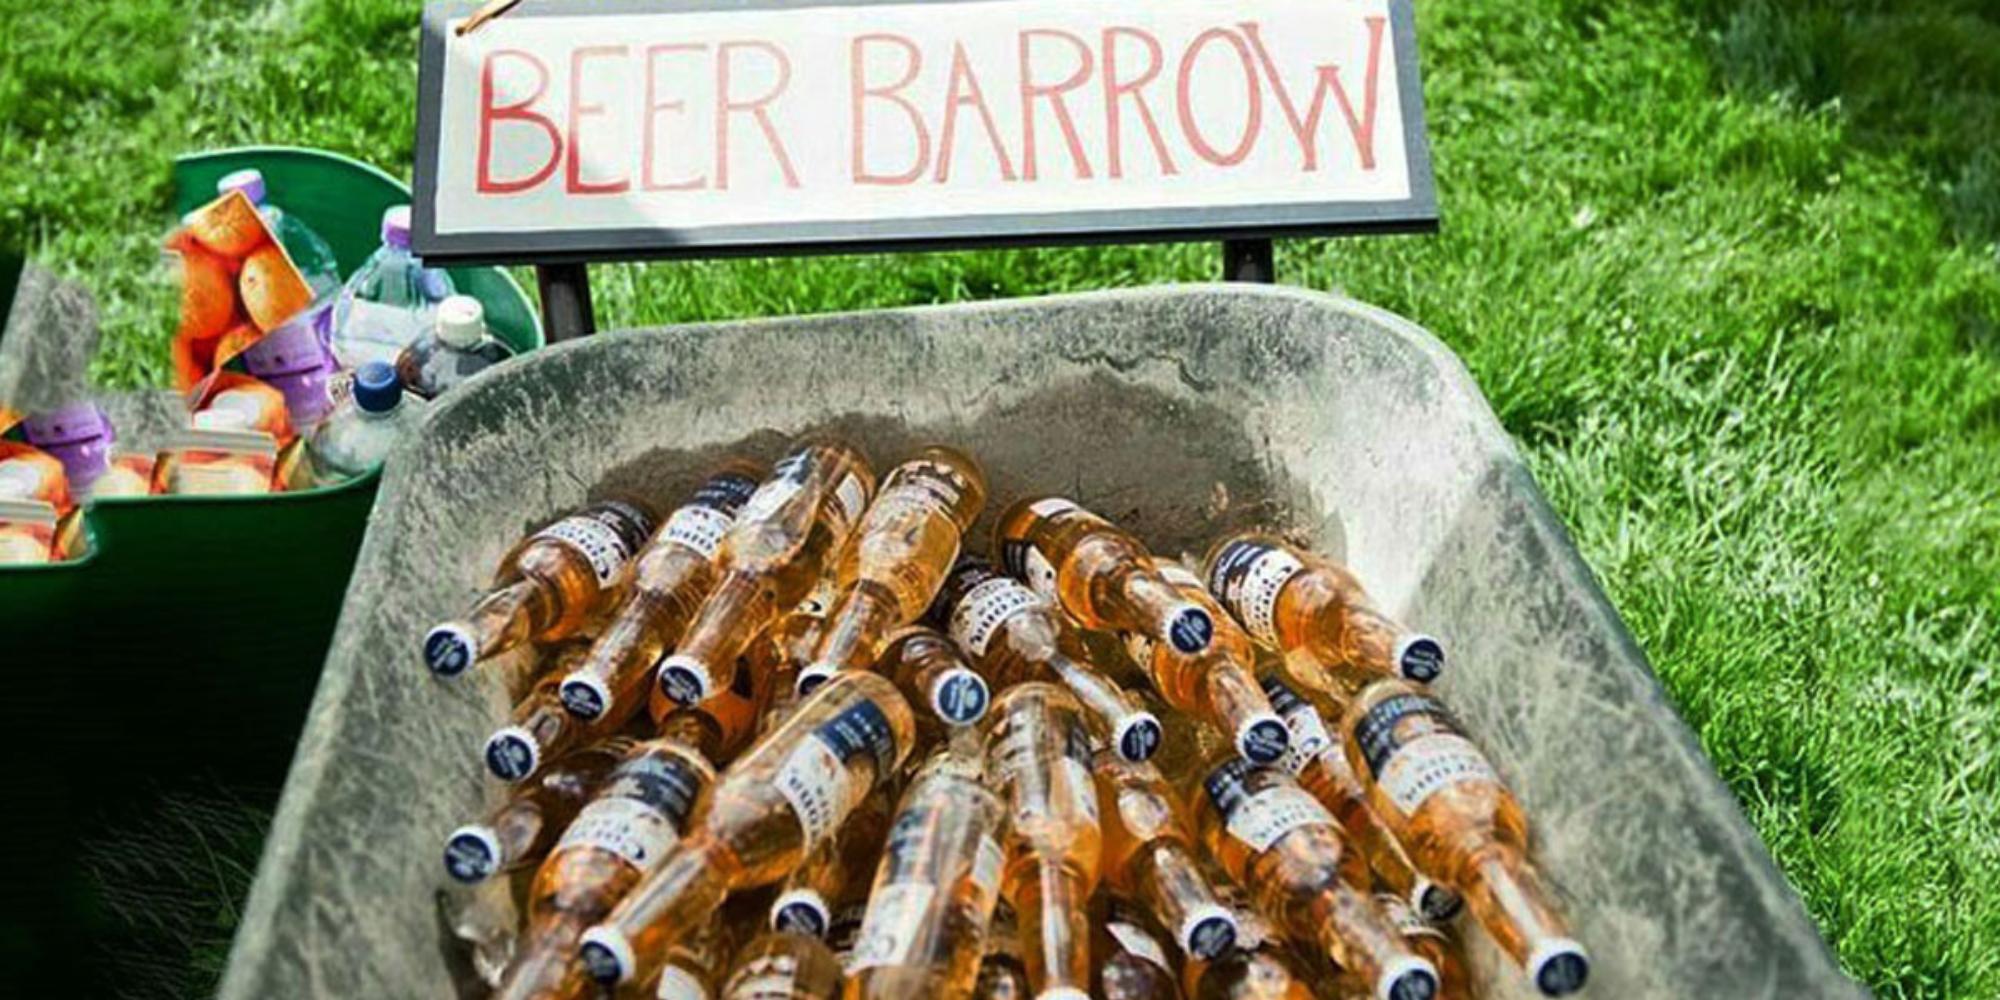 beer barrow